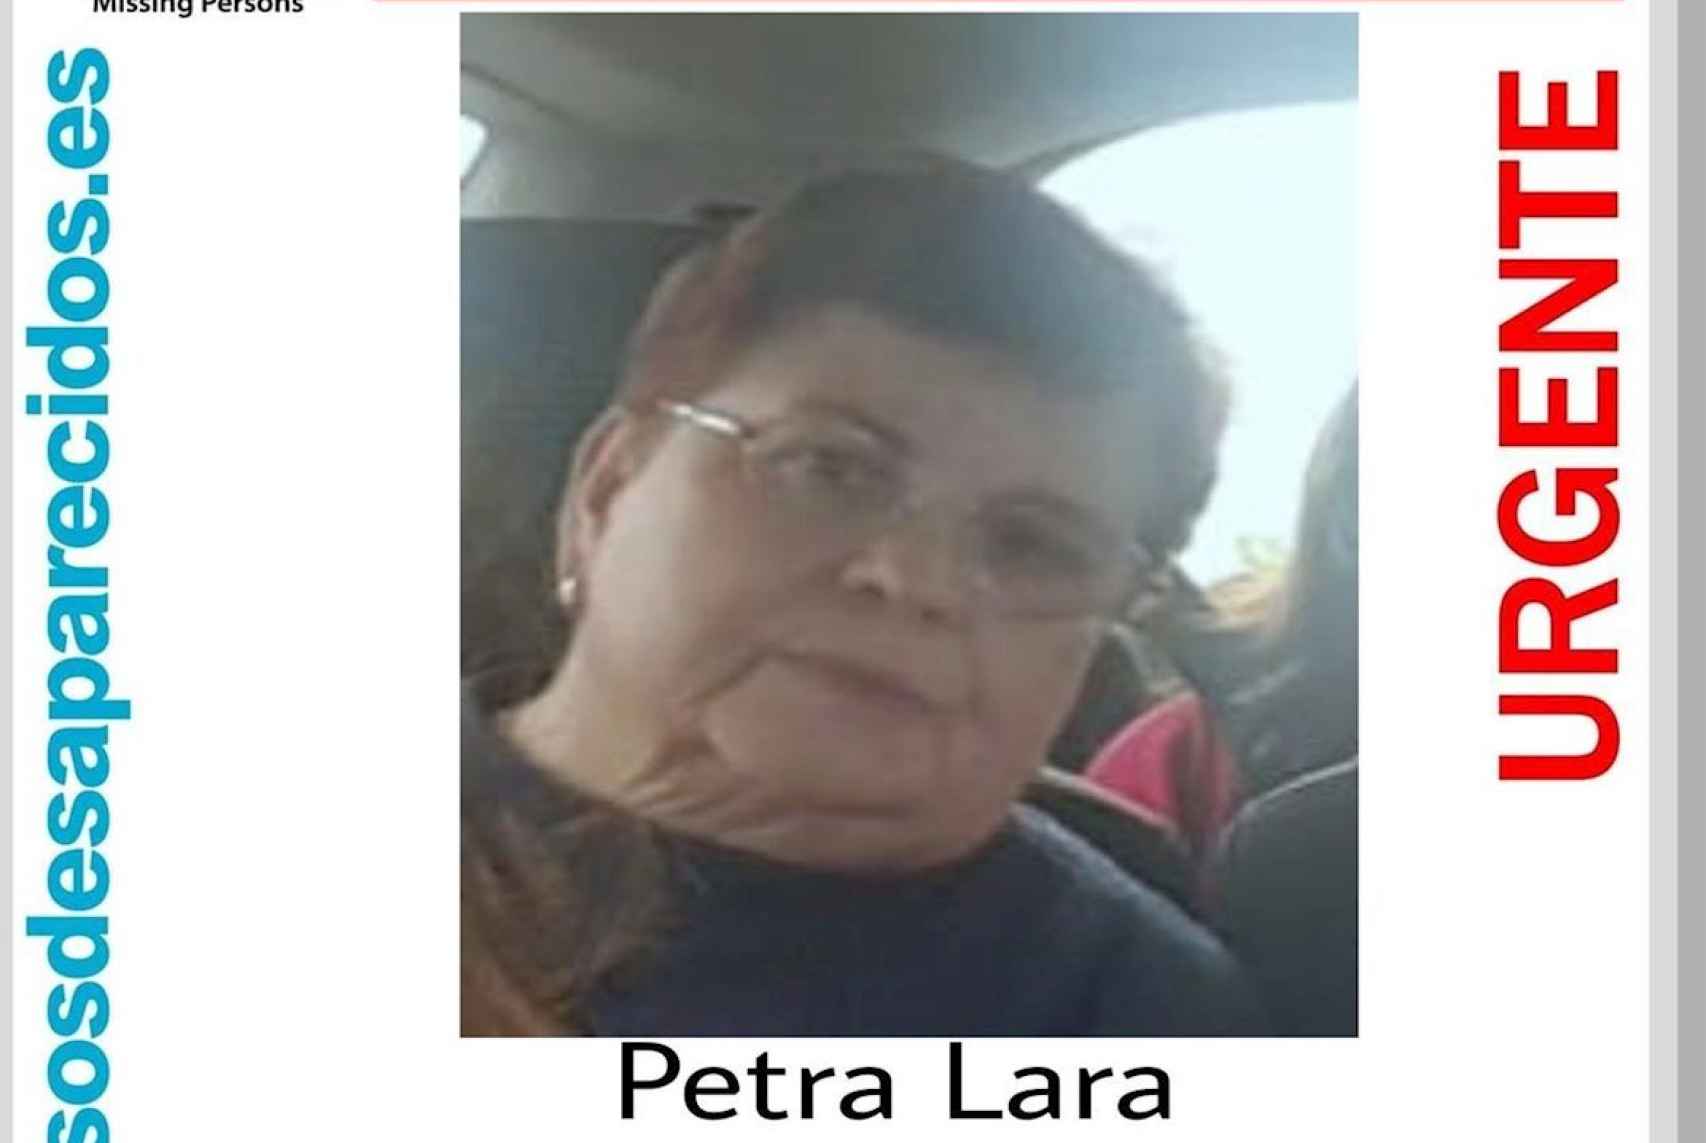 Imagen del cartel que SOS Desaparecidos y los familiares de Petra distribuyeron por redes sociales para recabar pistas sobre su paradero.